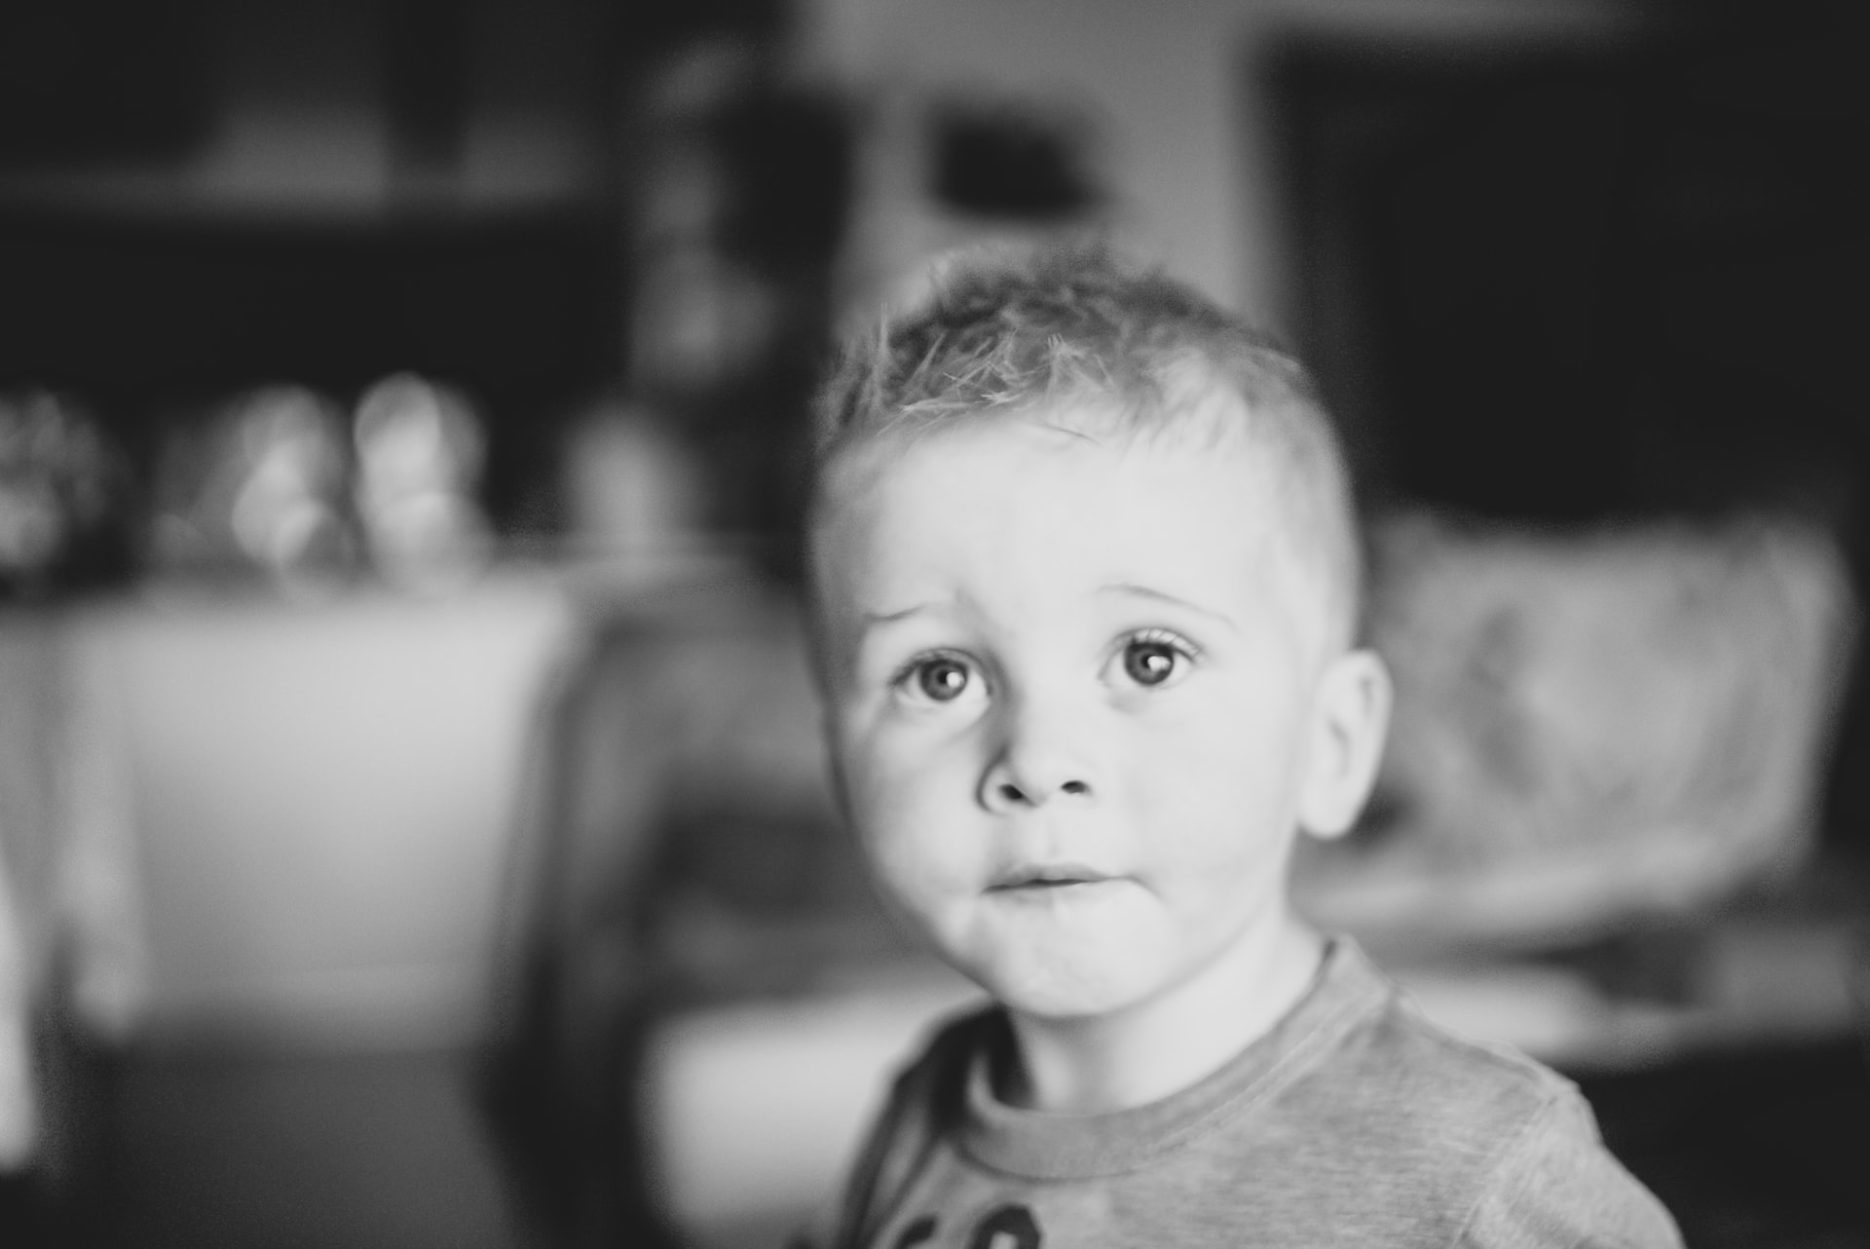 Černobílý portrét dítěte - chlapce